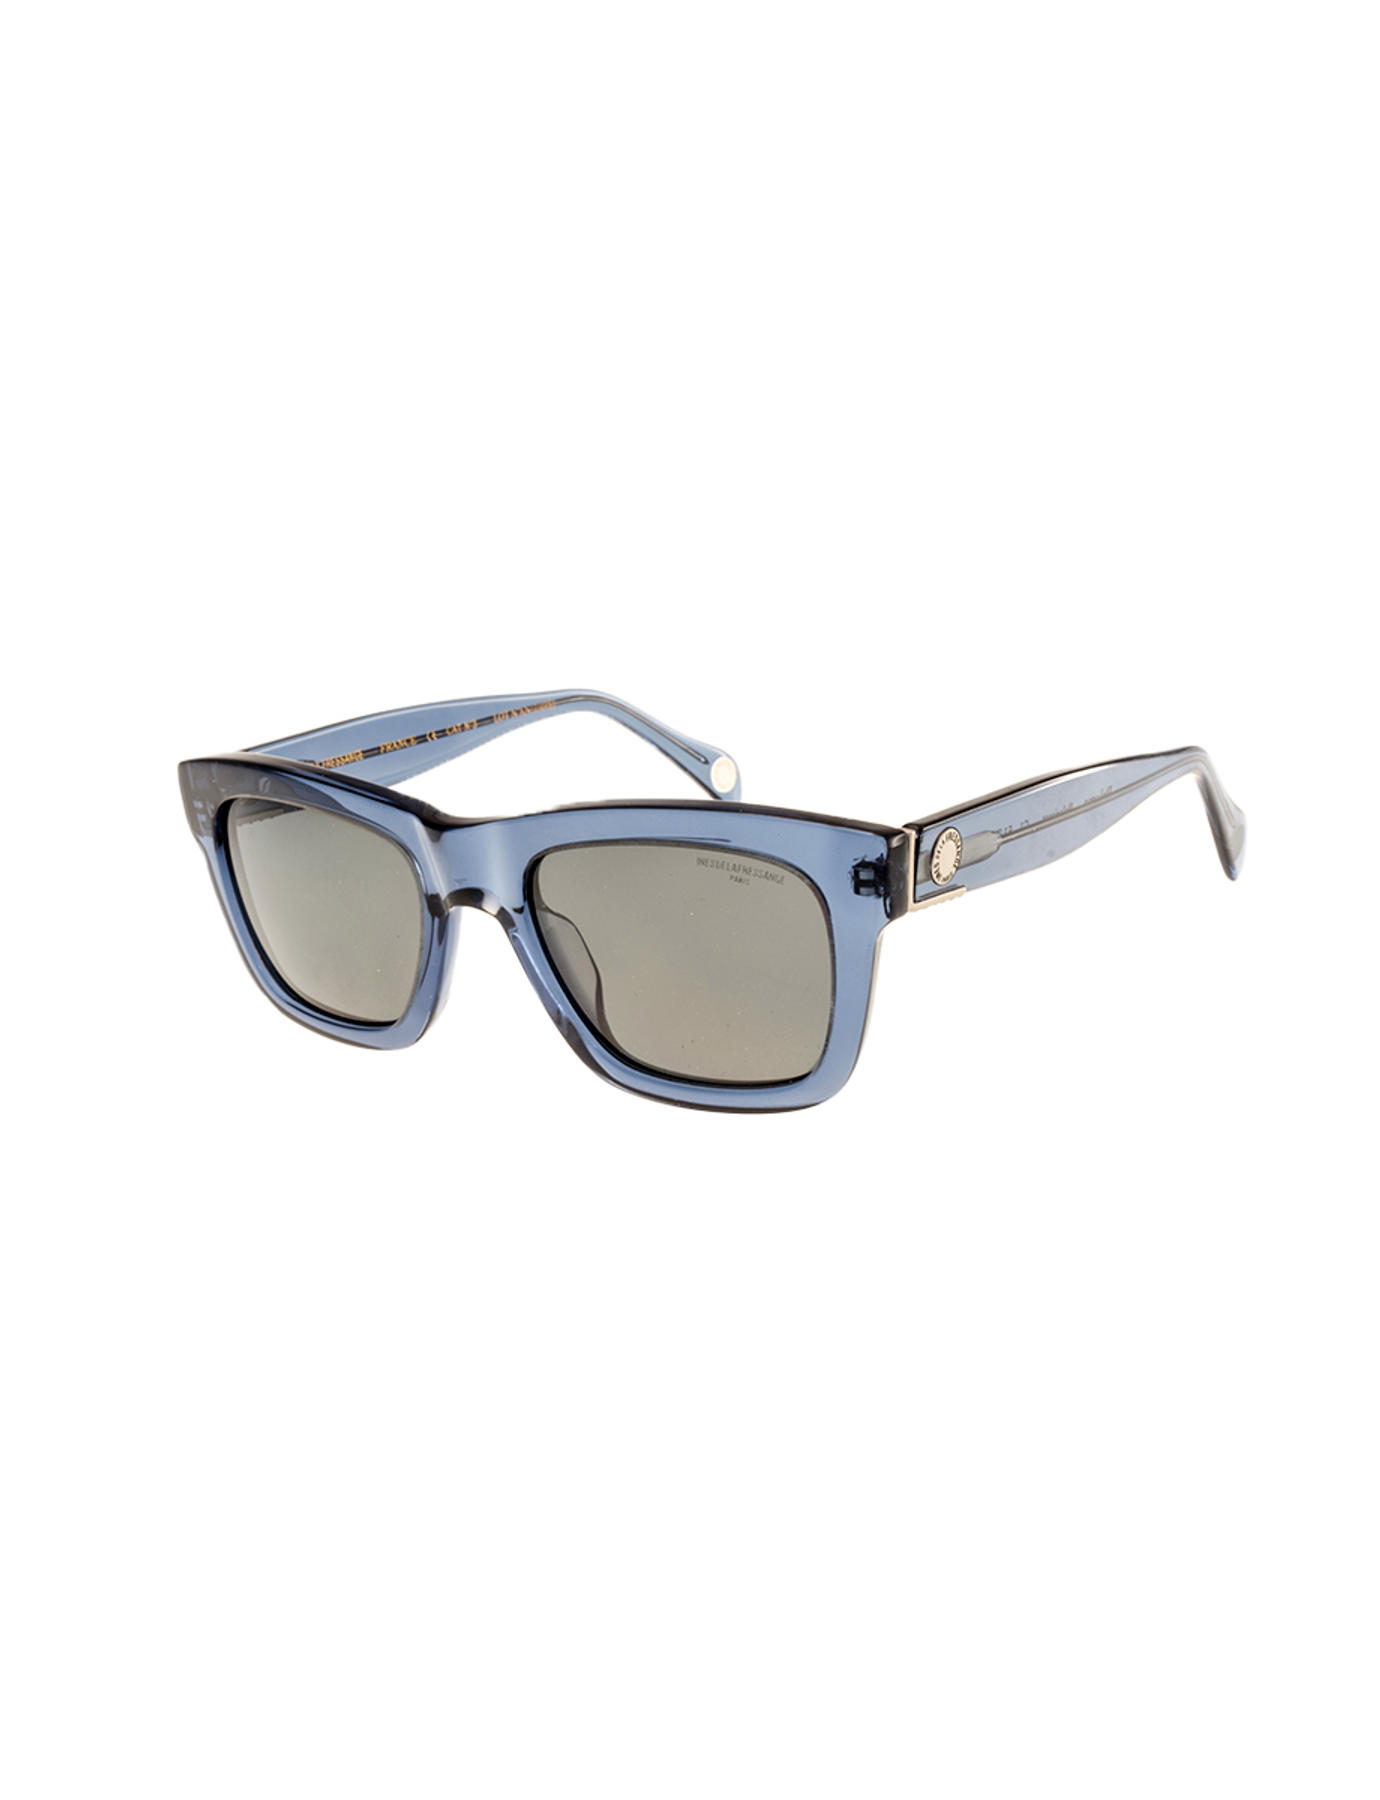 sunglasses-acetate-paloma-blue